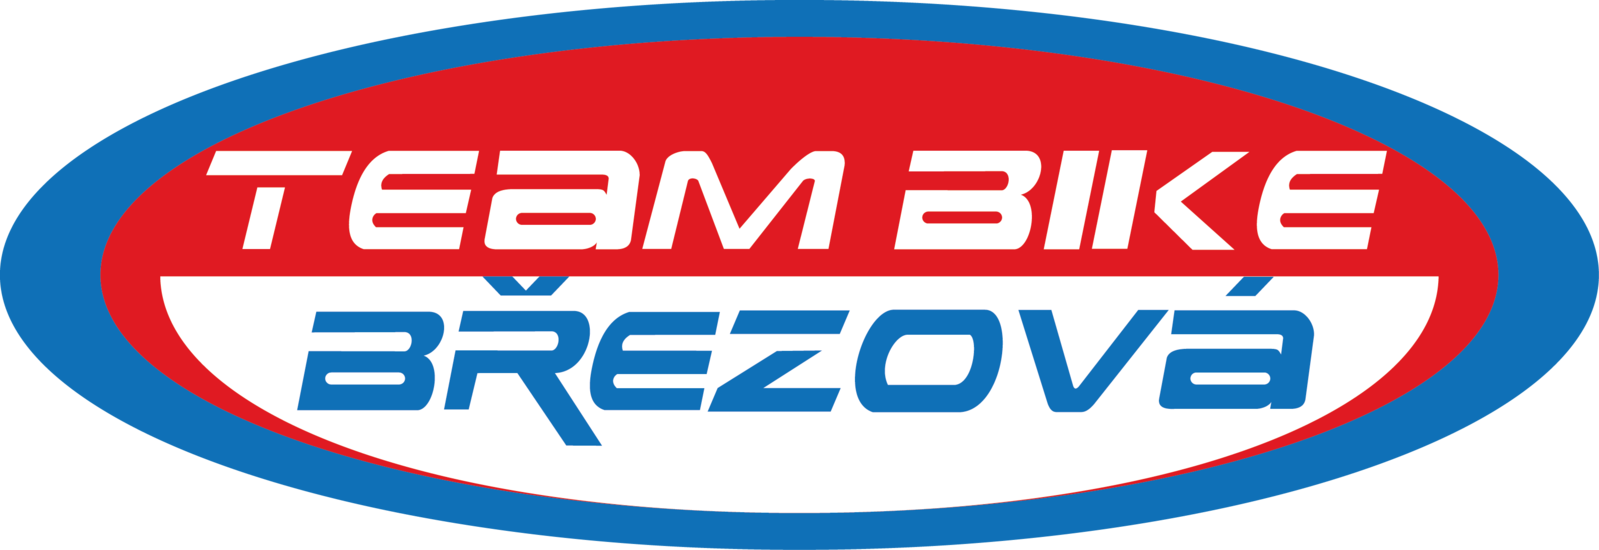 BIKE_BREZOVA_logo_trikolora